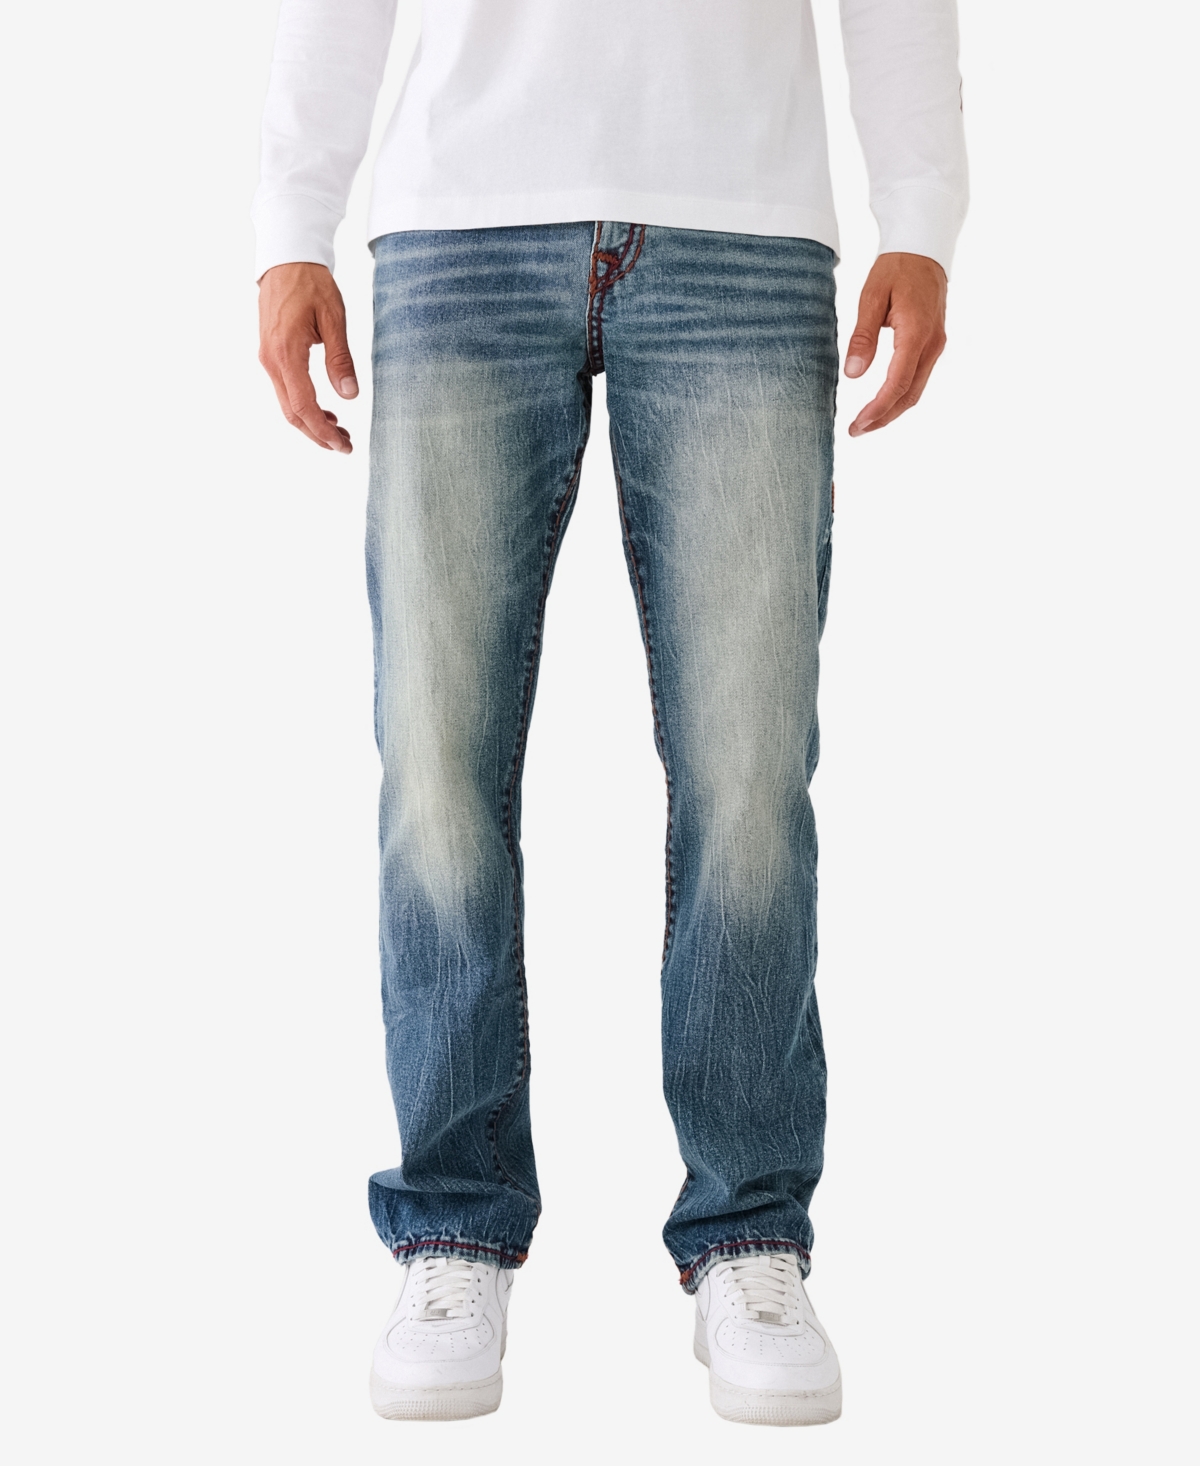 True Religion Painted Hs Ricky Sn Flap Jeans Miner Dark Wash In Worn Trophy Medium Wash